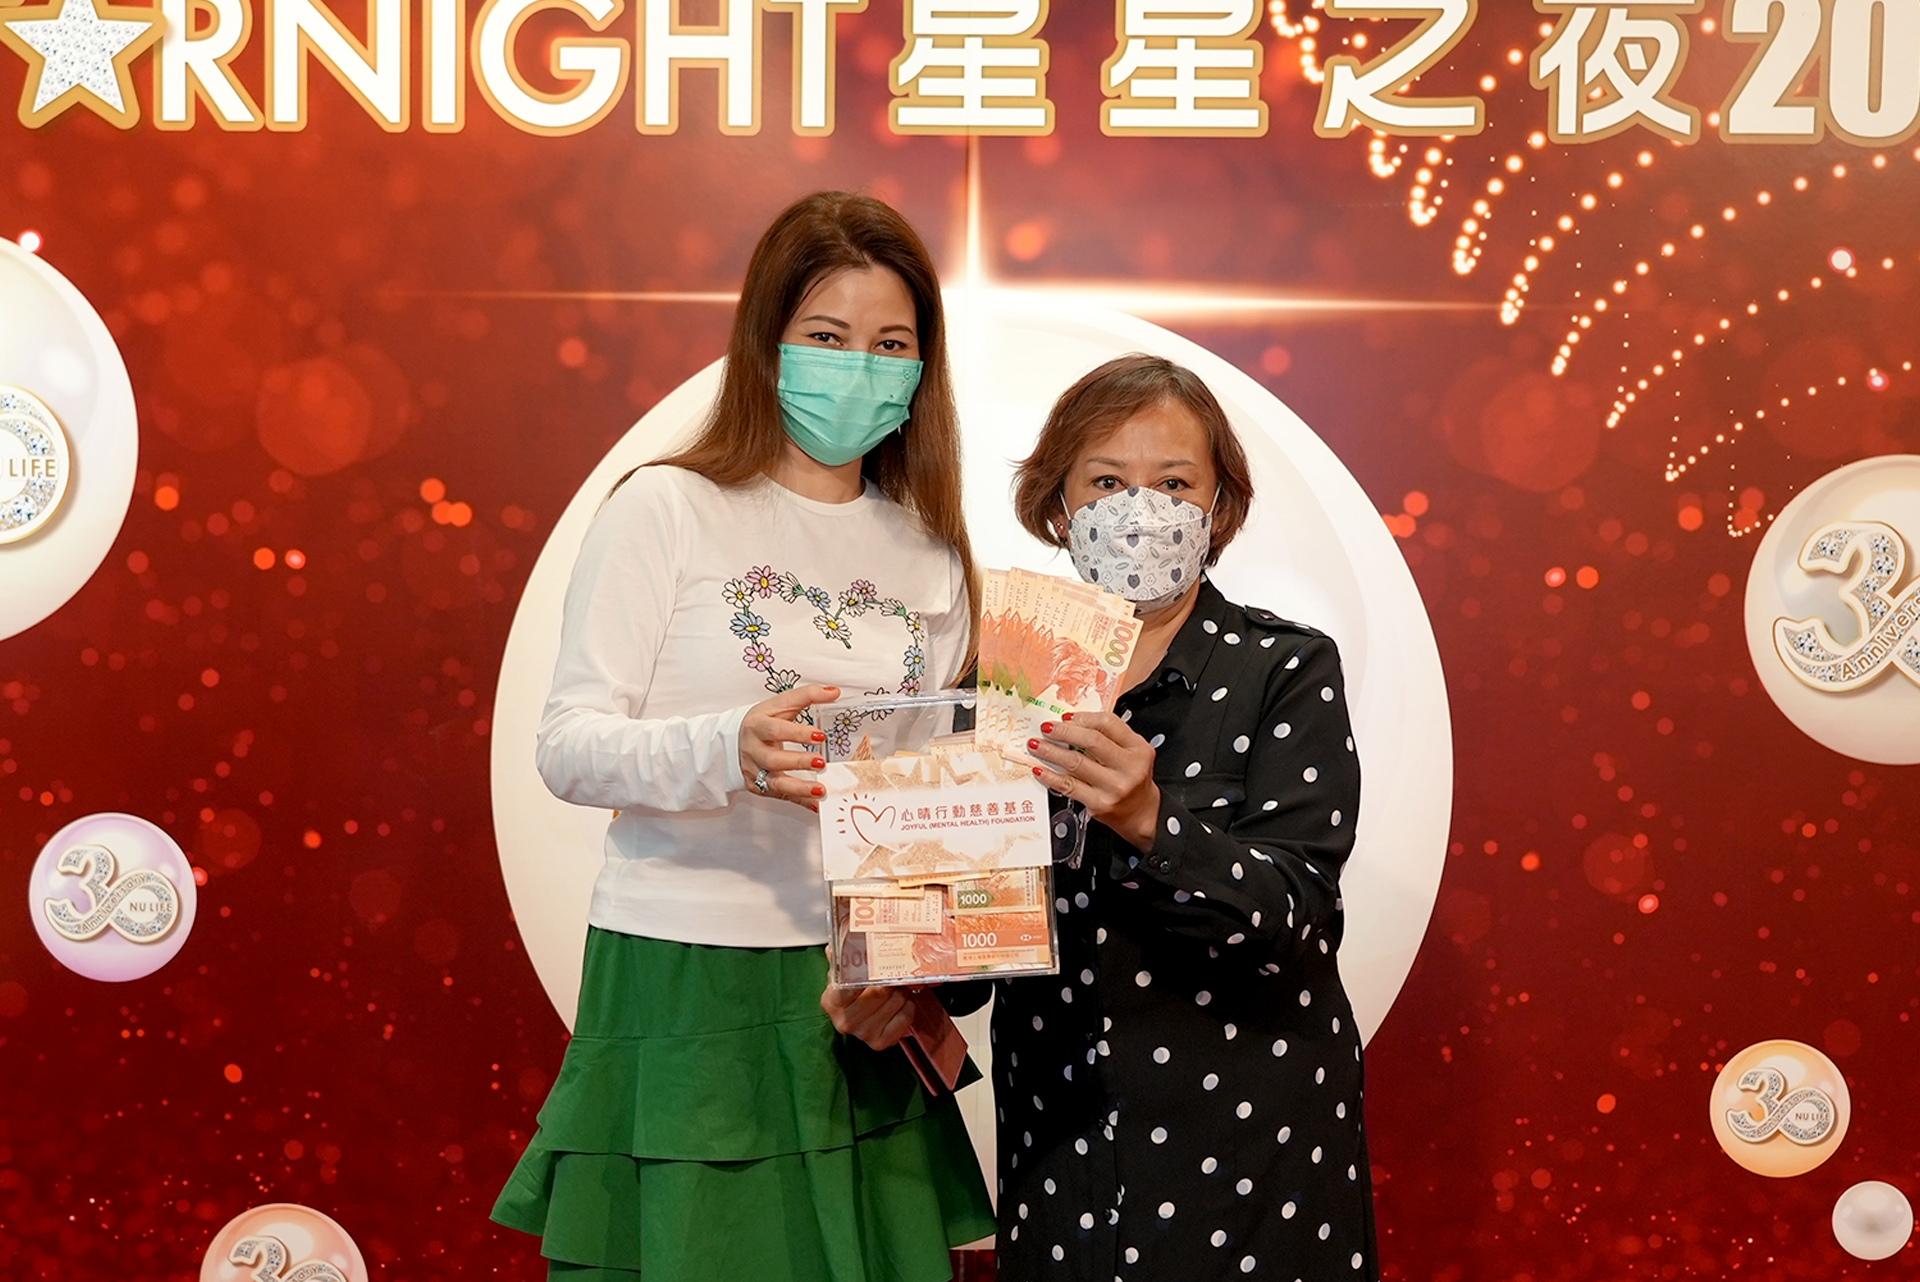 1.	恭賀Anna Ko從星級百萬富翁遊戲贏取HK$10,000獎金並與公司合共捐助HK$4000予「心晴行動慈善基金」